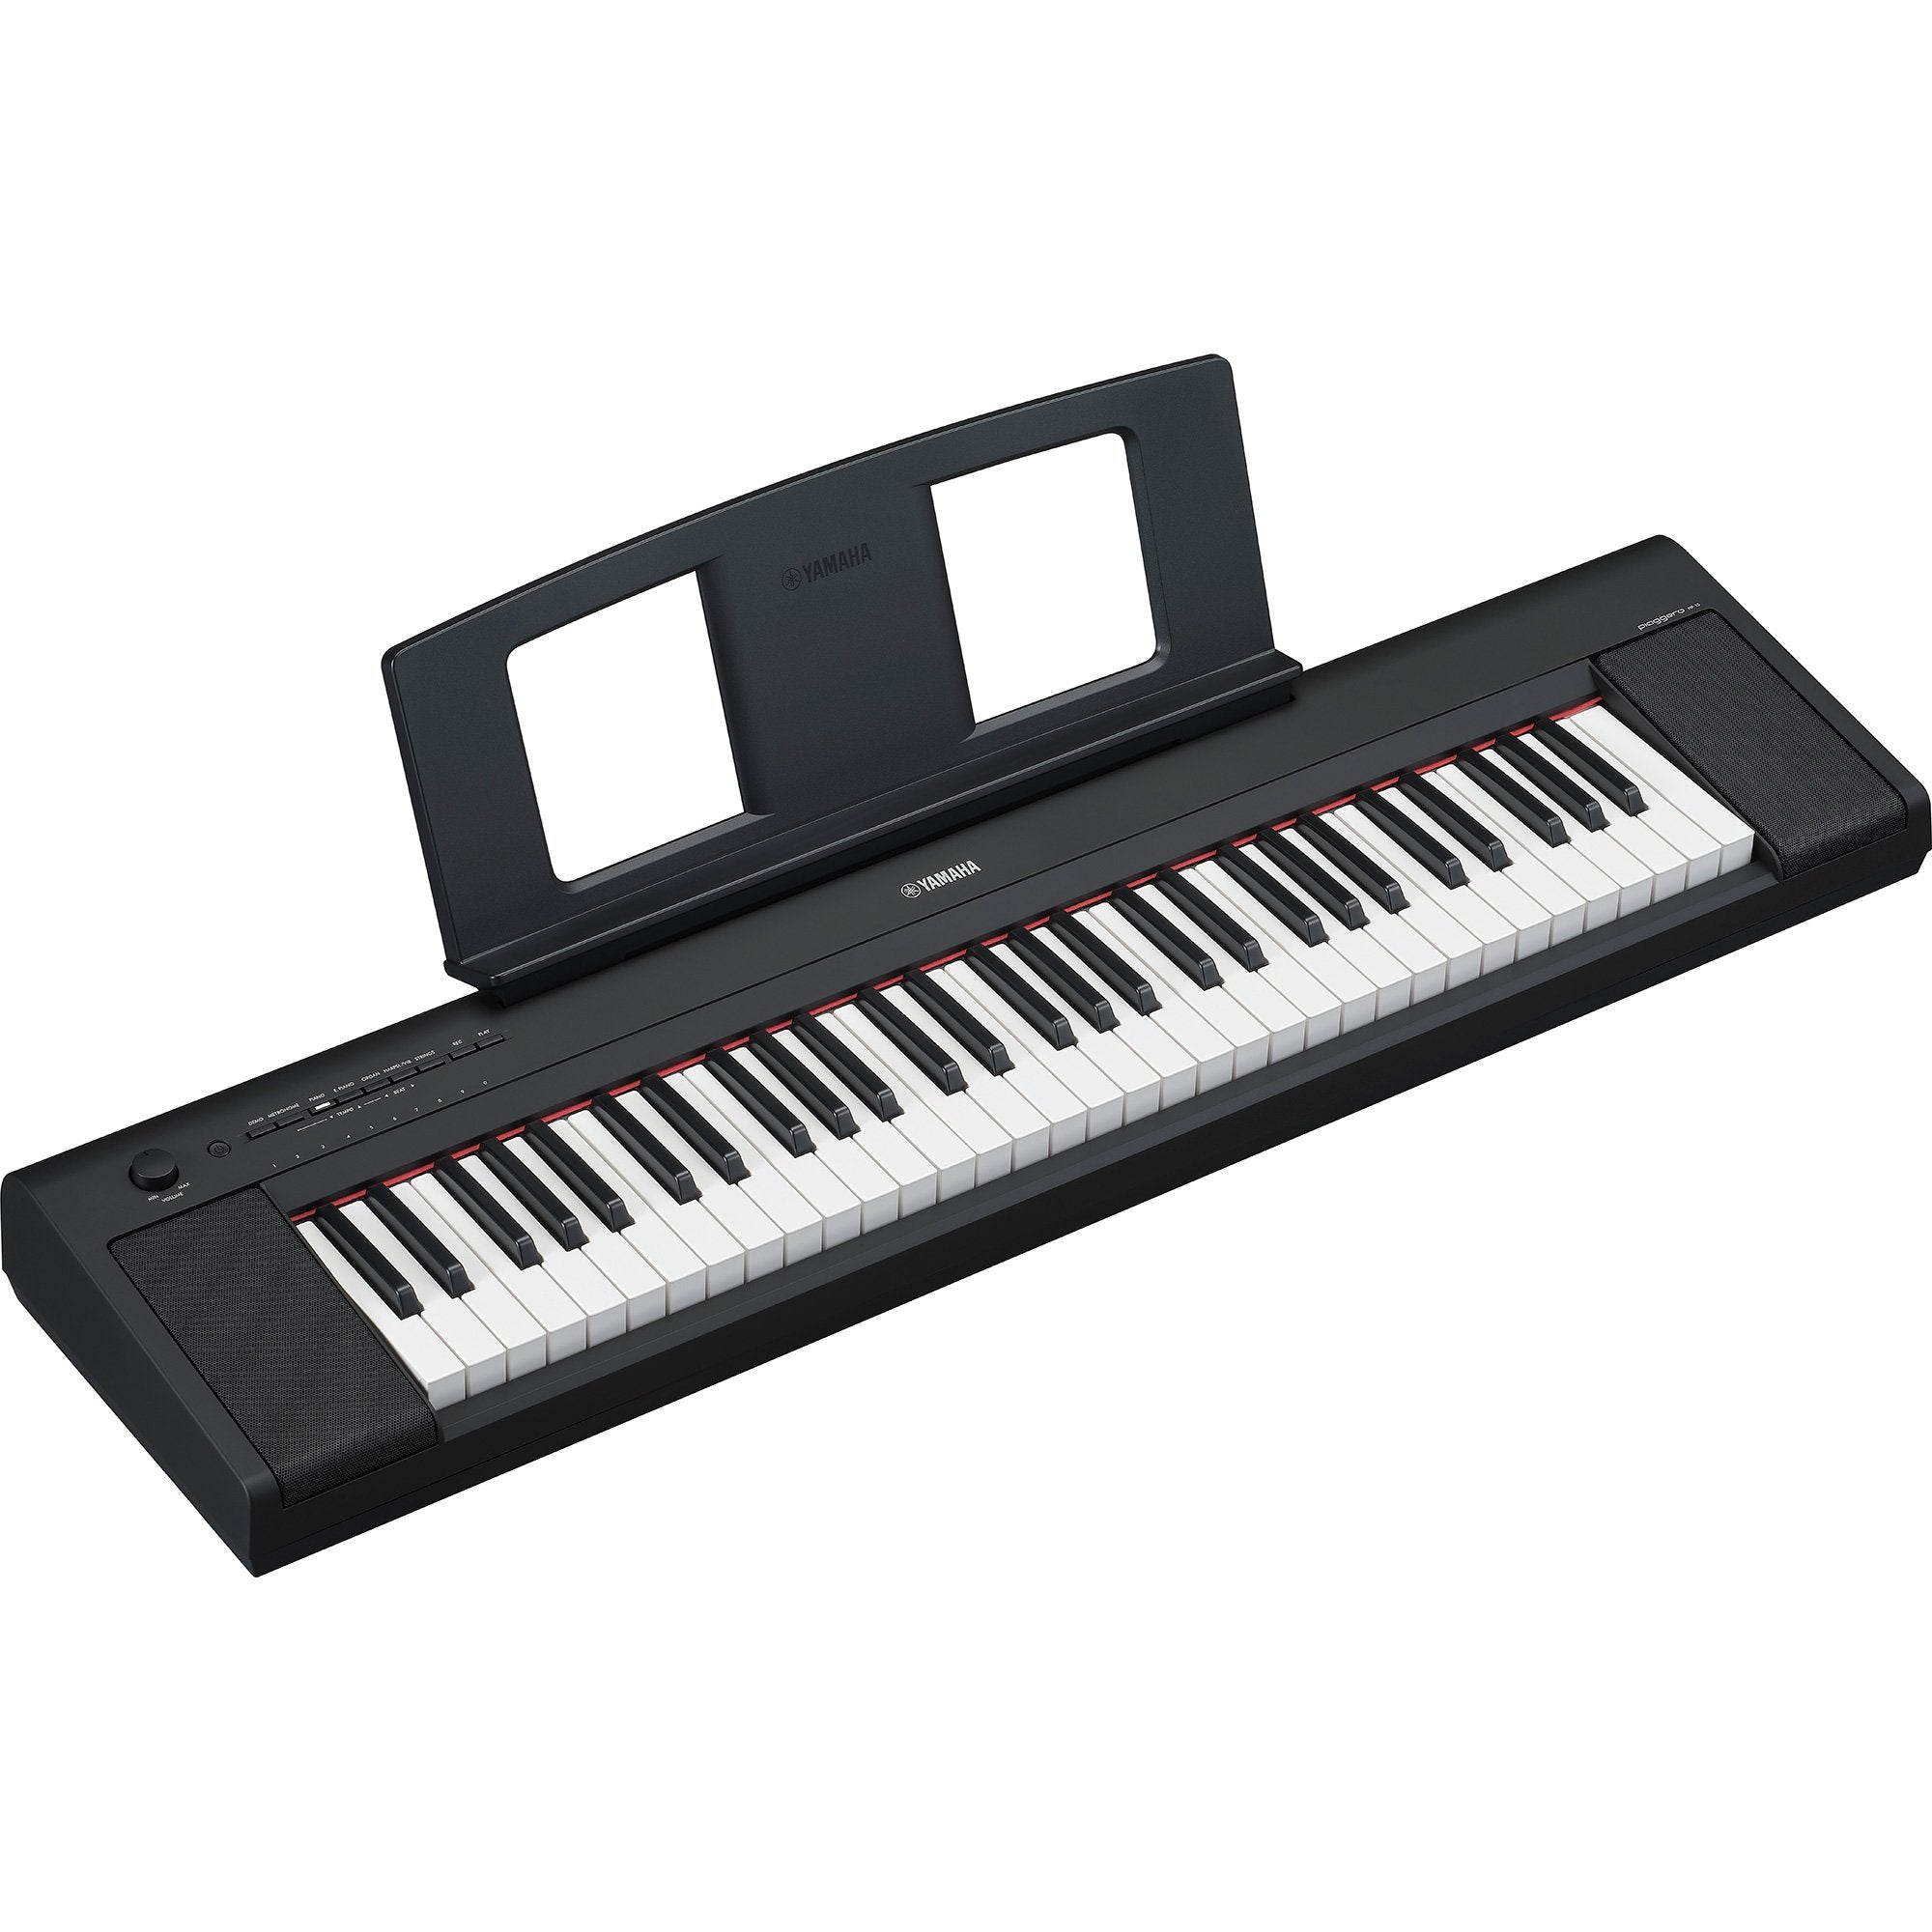 Yamaha NP-15 Piaggero 61-Key Piano-Style Keyboard